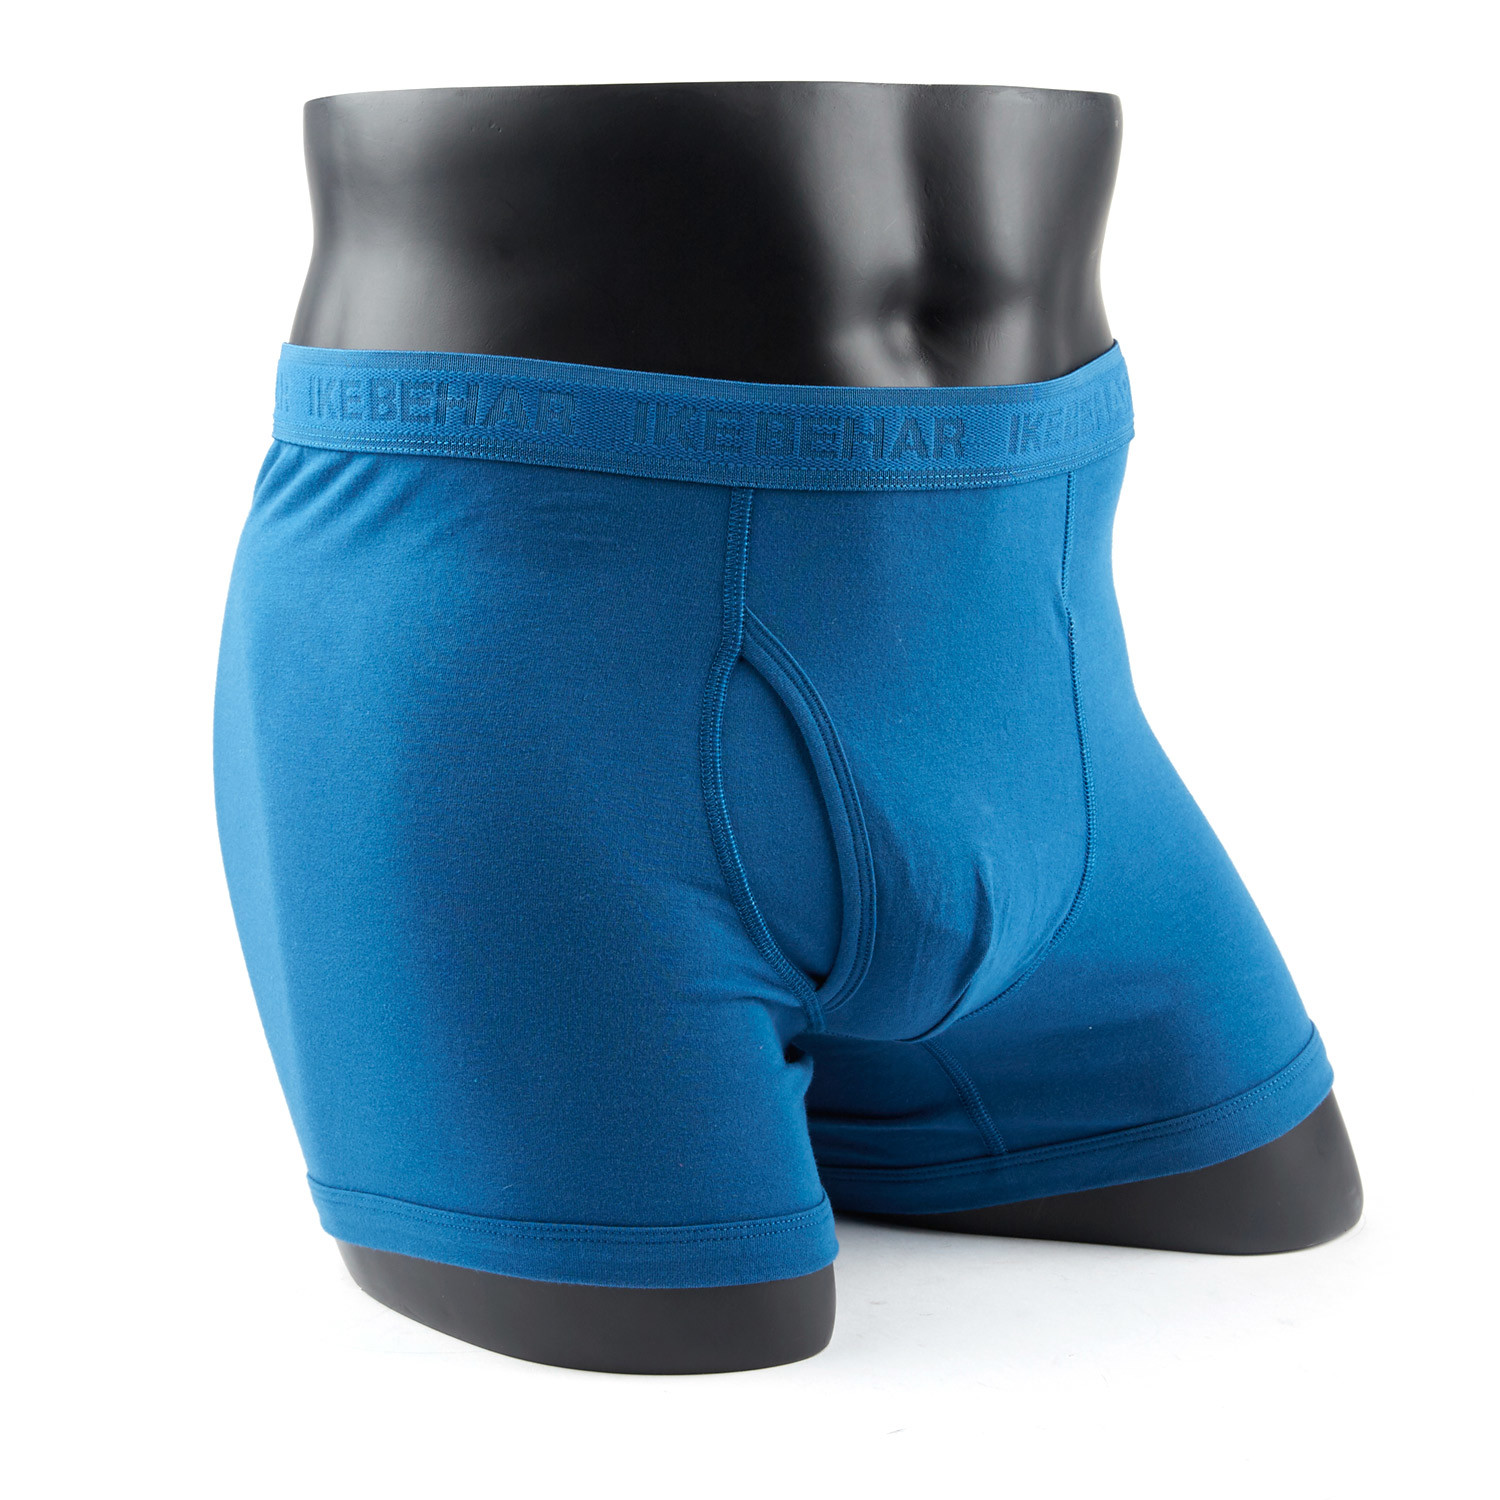 Basic Cotton Stretch Underwear // Grey + Navy + Blue // Set of 3 (S(28 ...